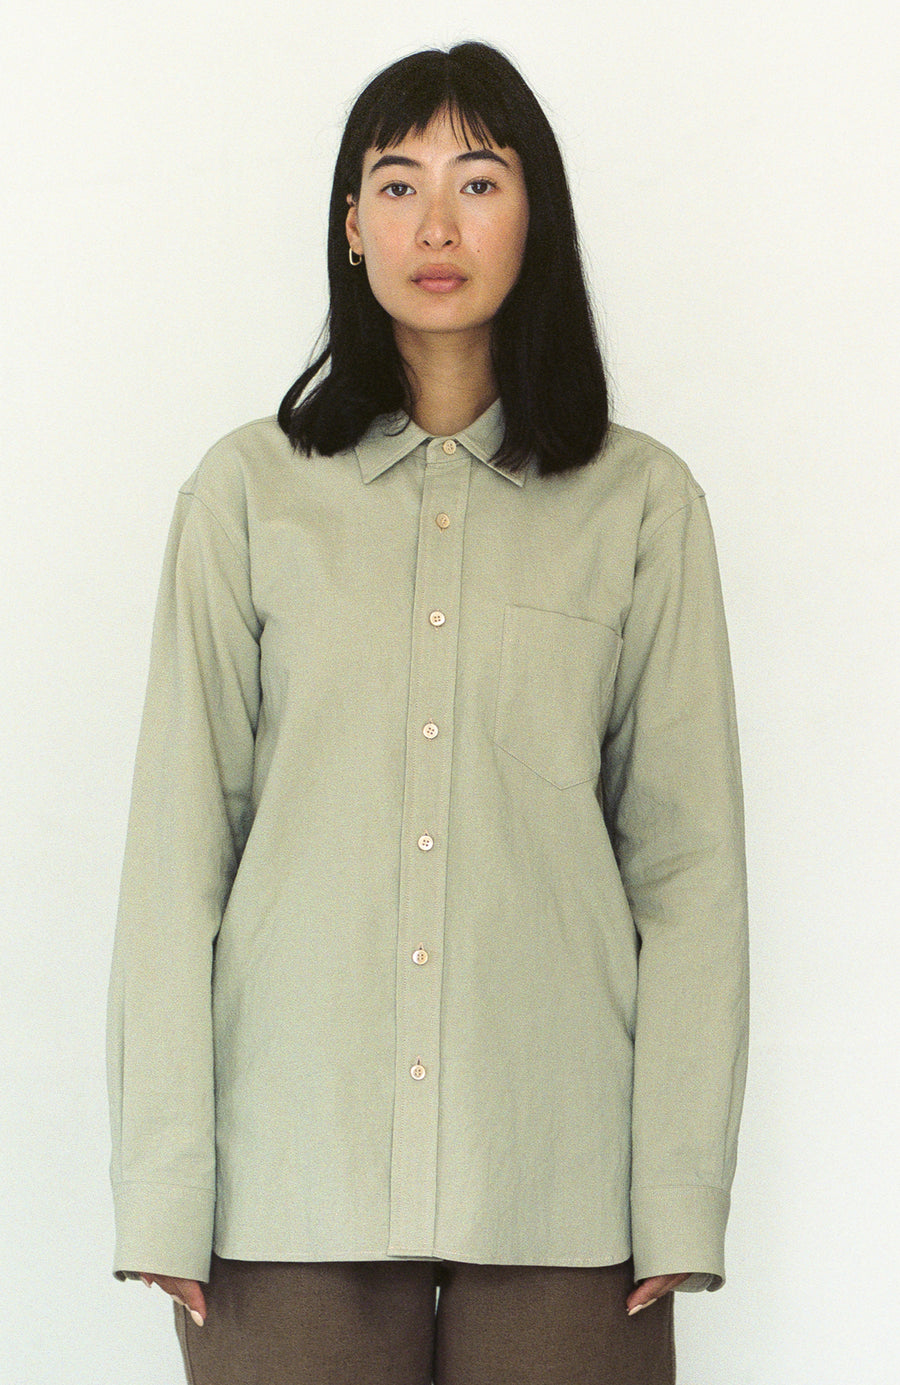 Cotton/Linen Shirt